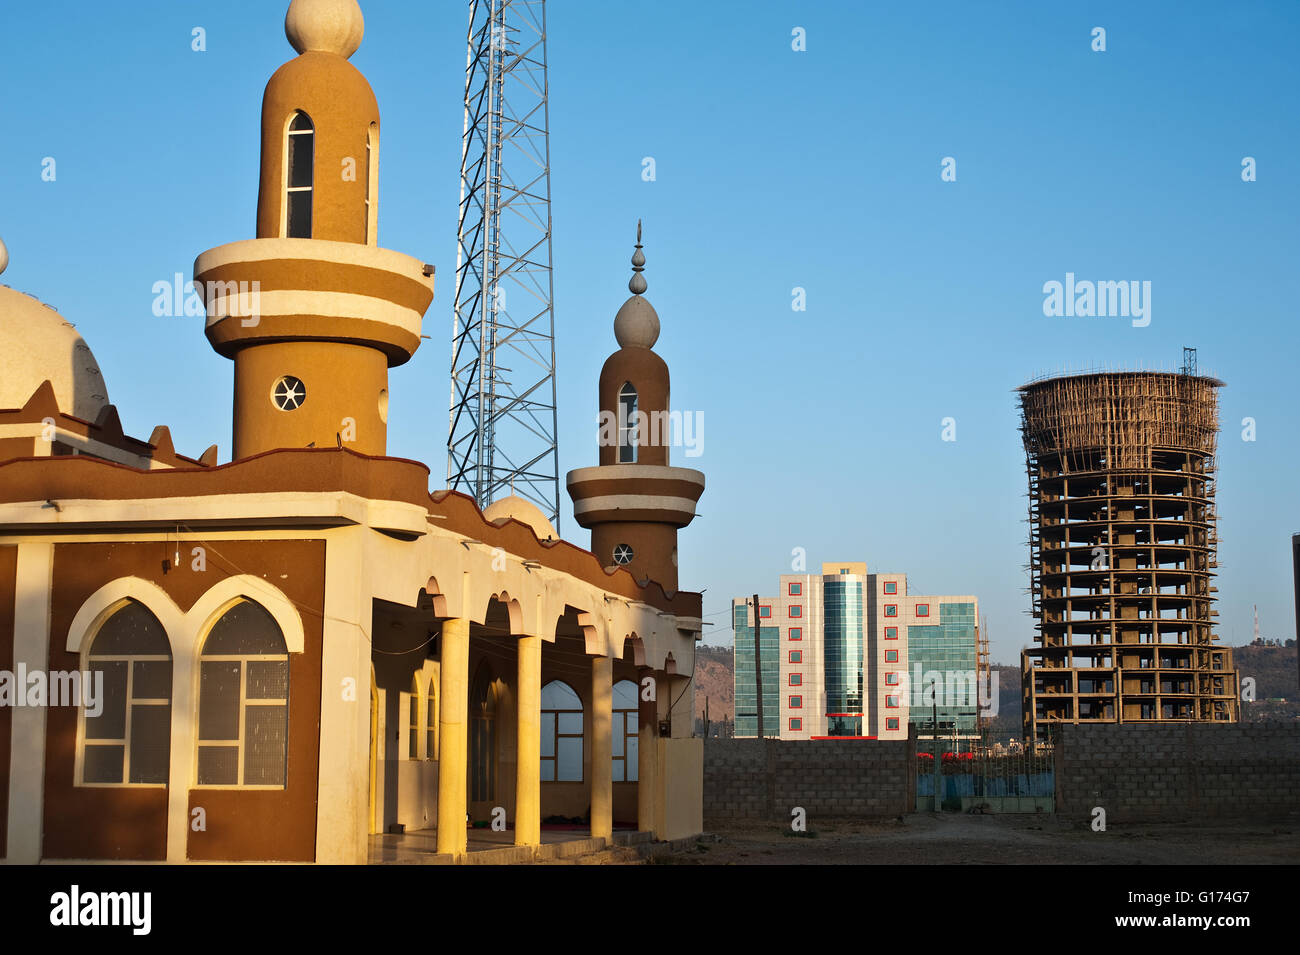 Antenne de téléphonie mobile  + mosquée, bâtiment moderne et bâtiment en construction à l'arrière-plan (Éthiopie) Banque D'Images